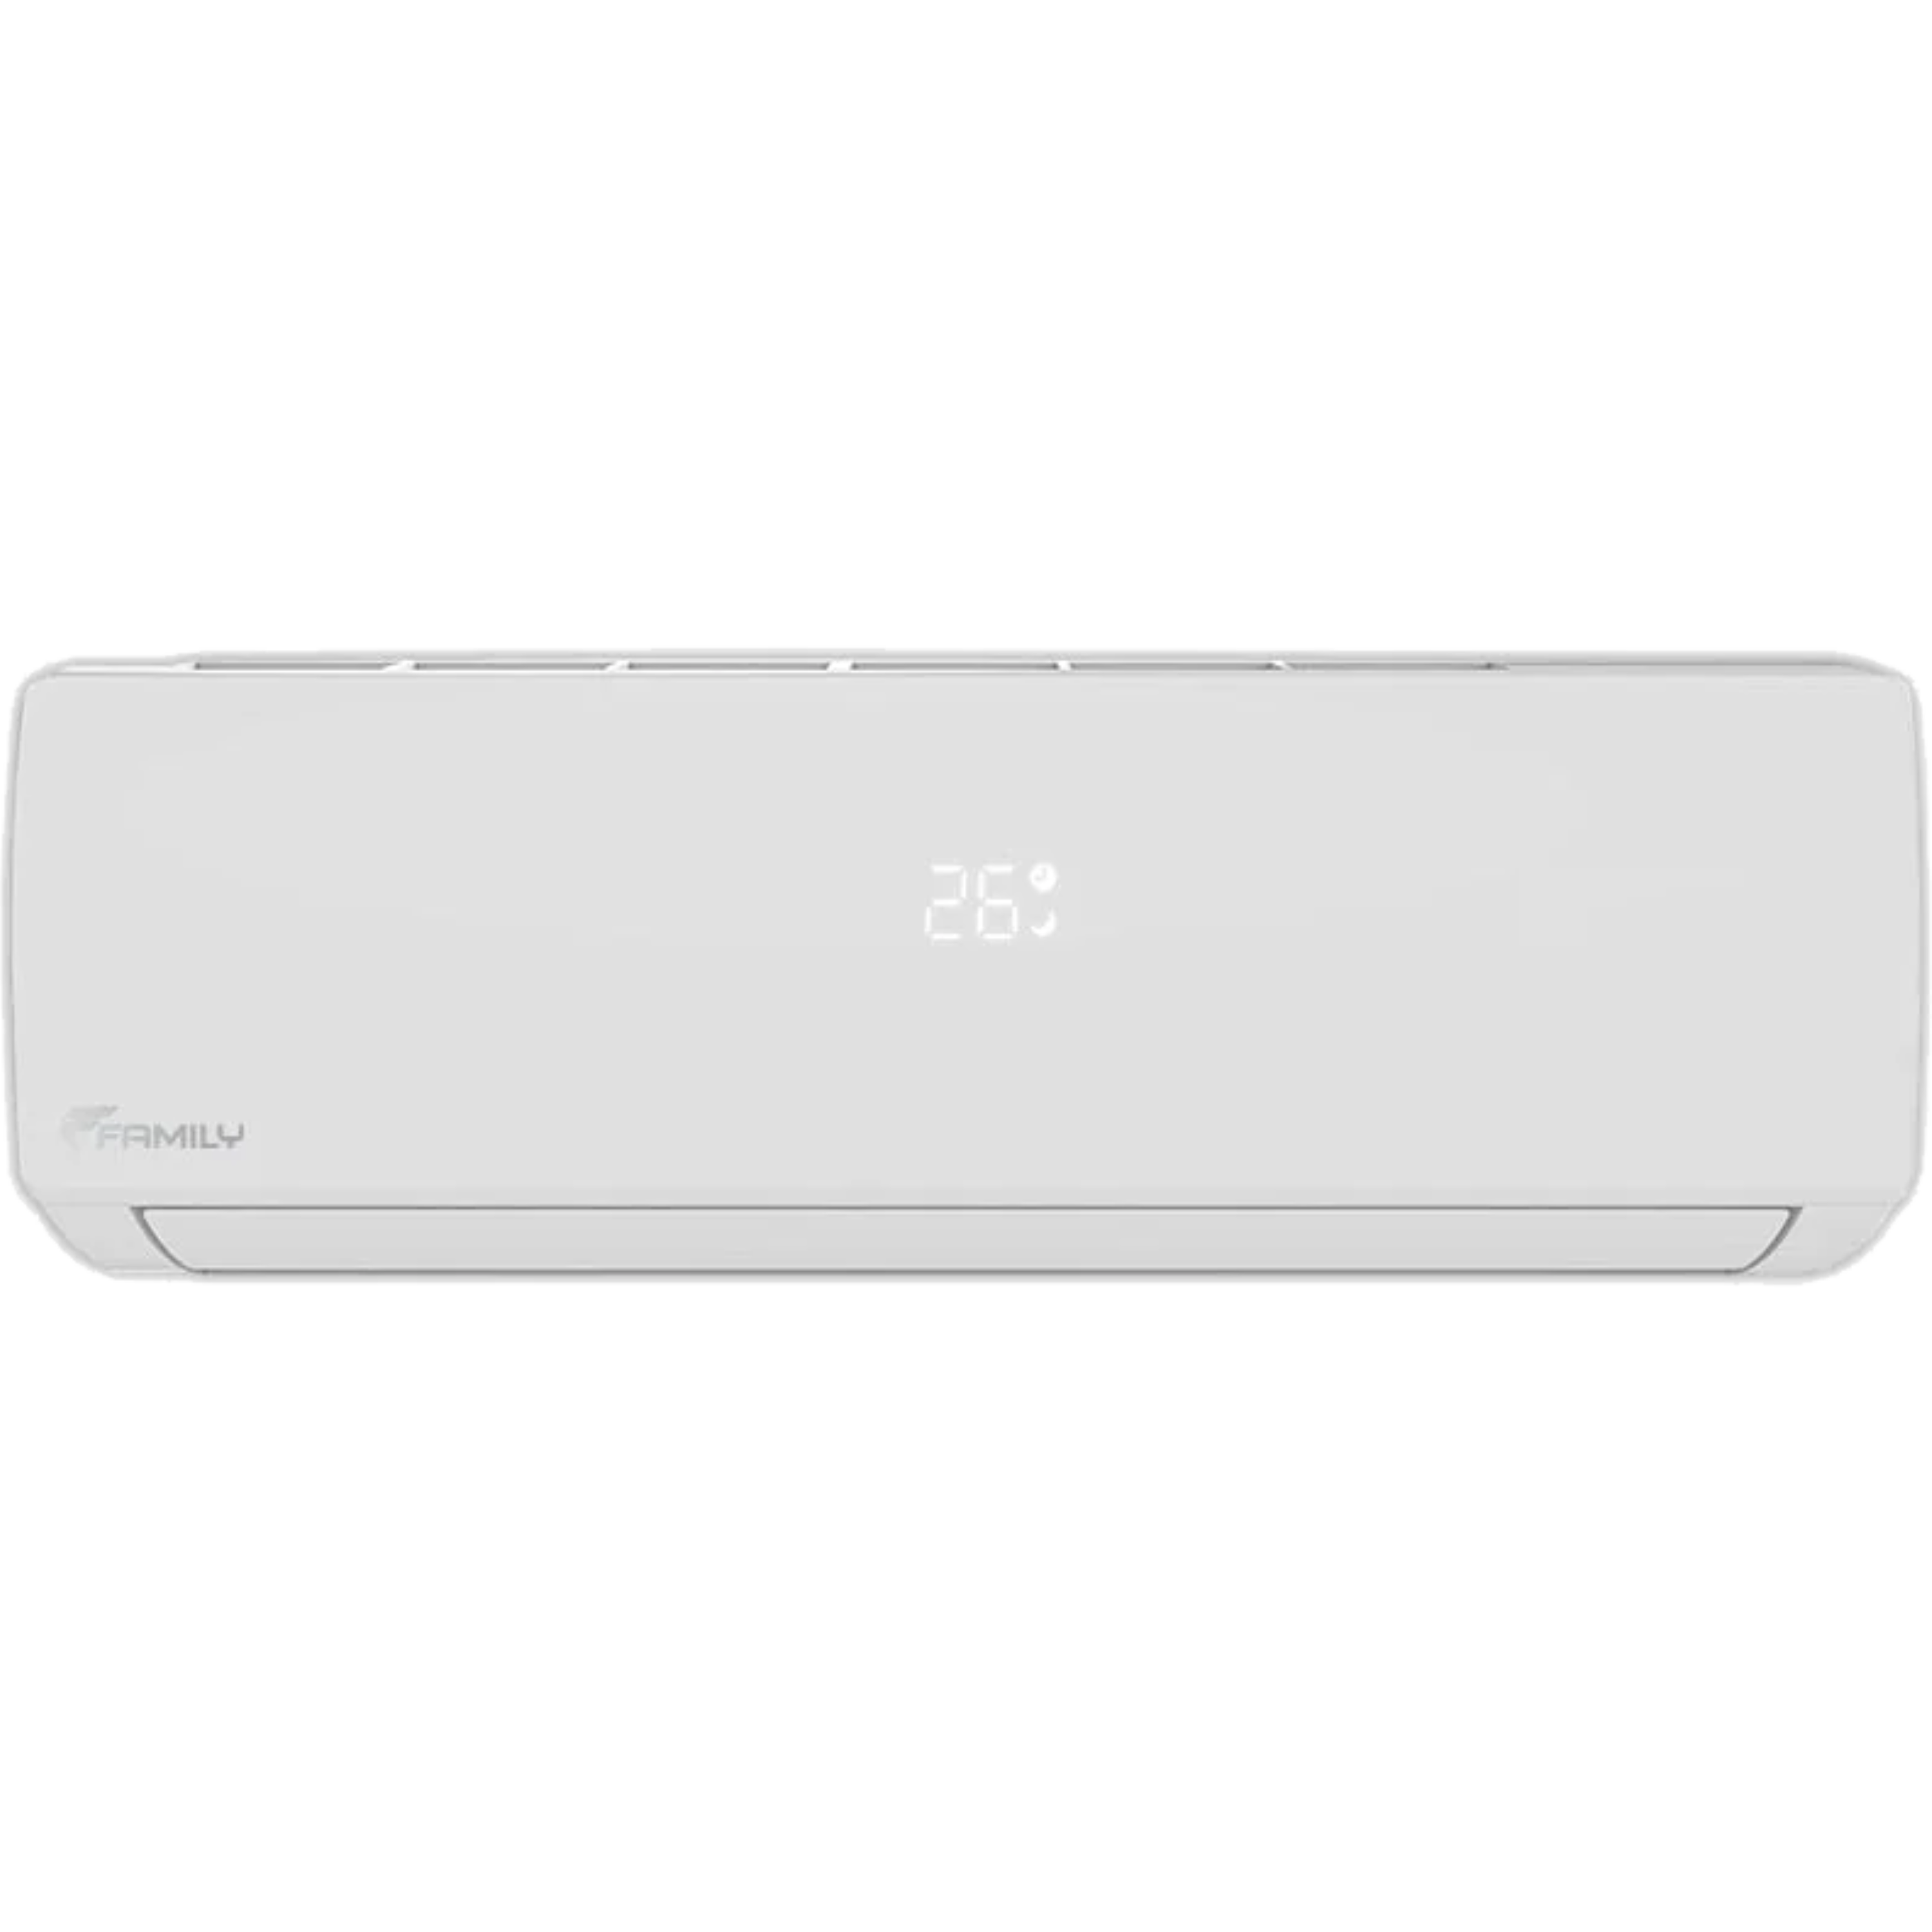 מזגן עילי Family Comfort Inverter 32 - צבע לבן חמש שנות אחריות ע